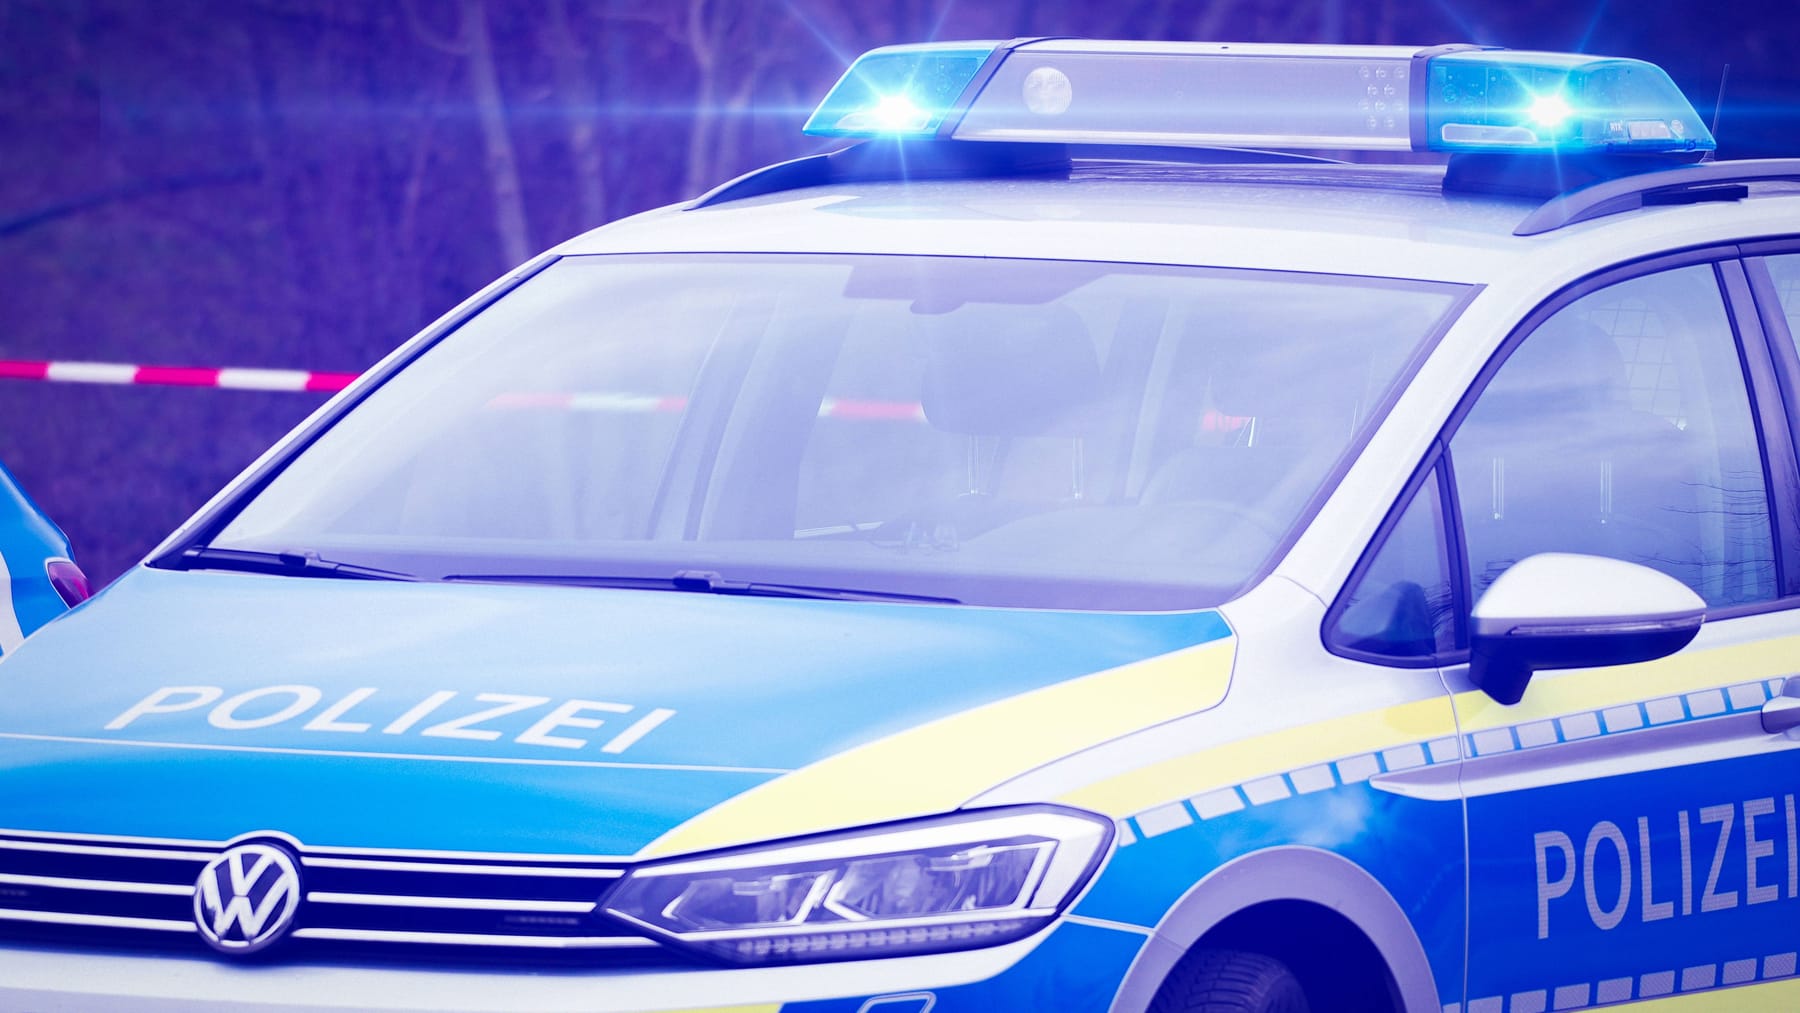 Mężczyzna porywa córkę w Polsce – policja szuka wspólników